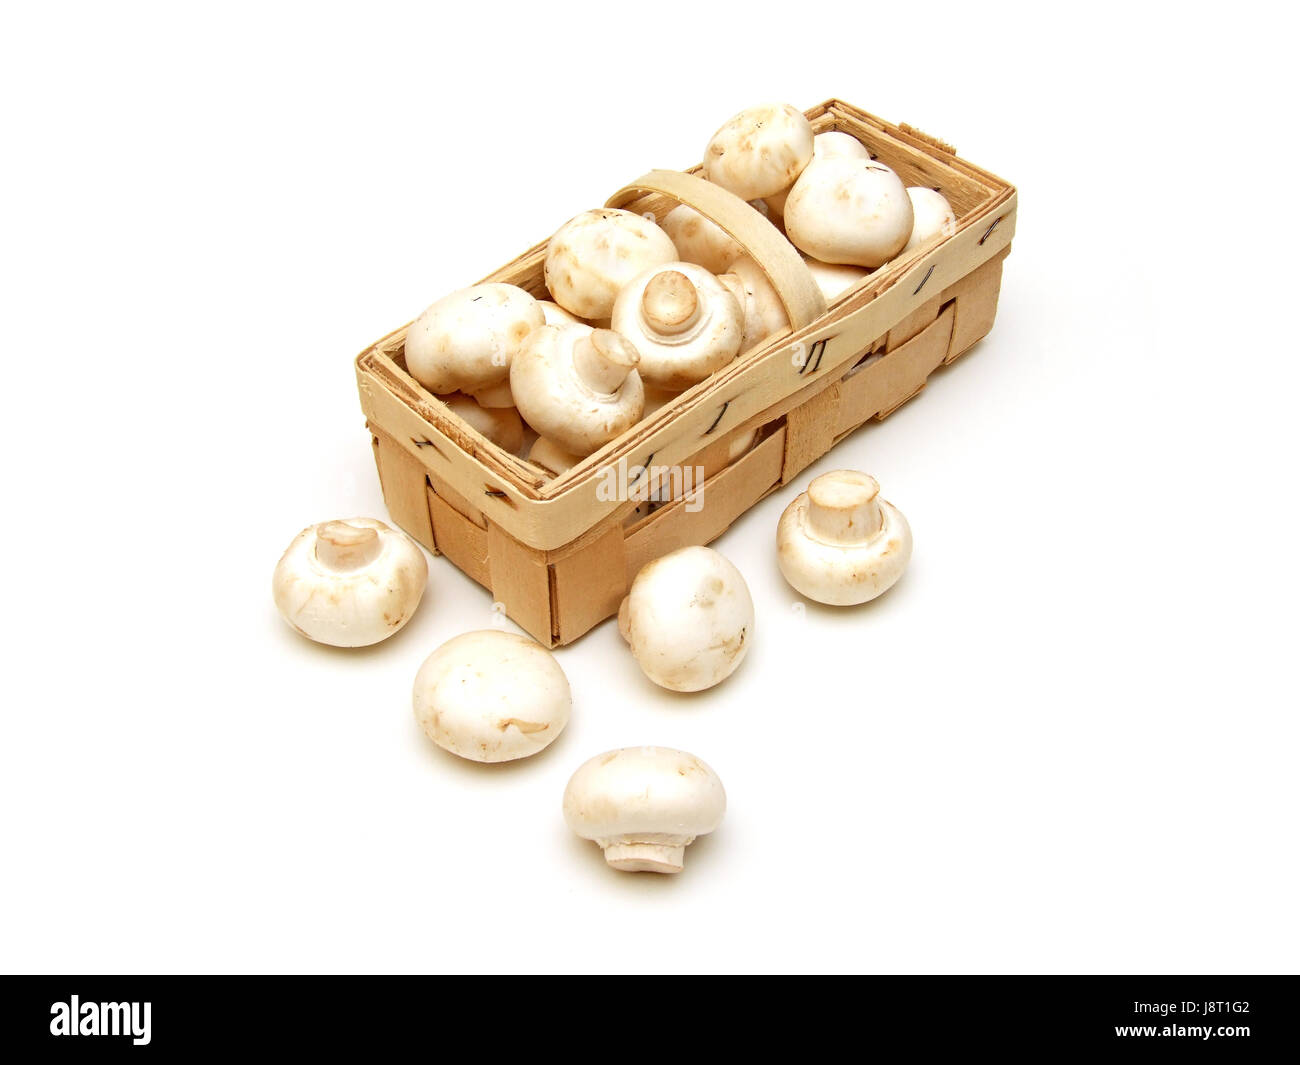 mushrooms (agaricus bisporus) Stock Photo